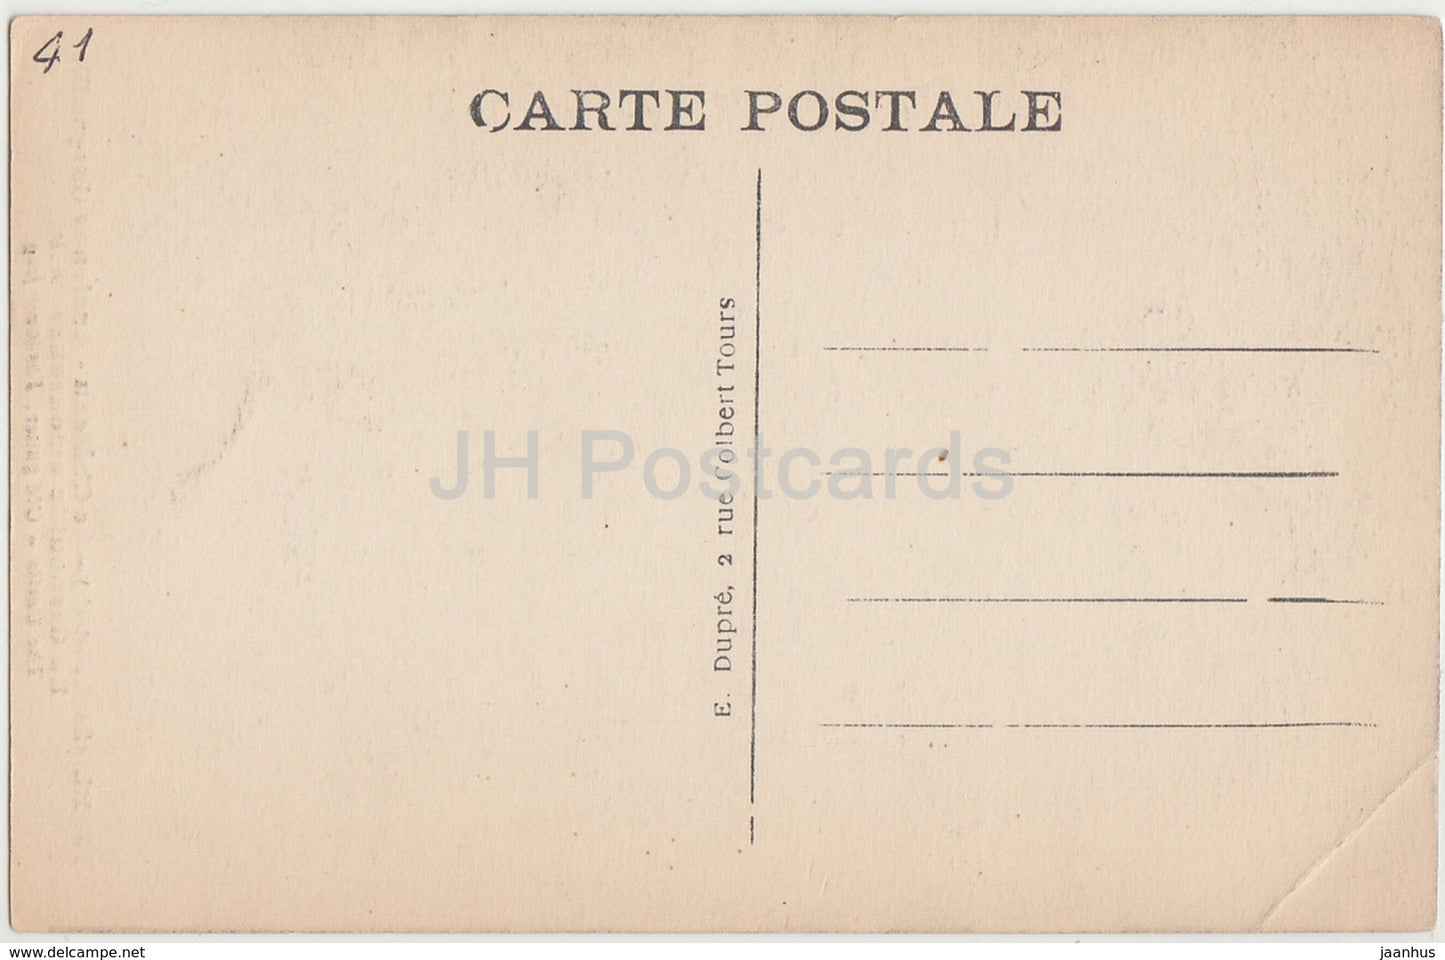 Blois - Le Chateau - Ancienne Gargouille - La Grenouille amoureuse - castle - 78 - old postcard - France - unused